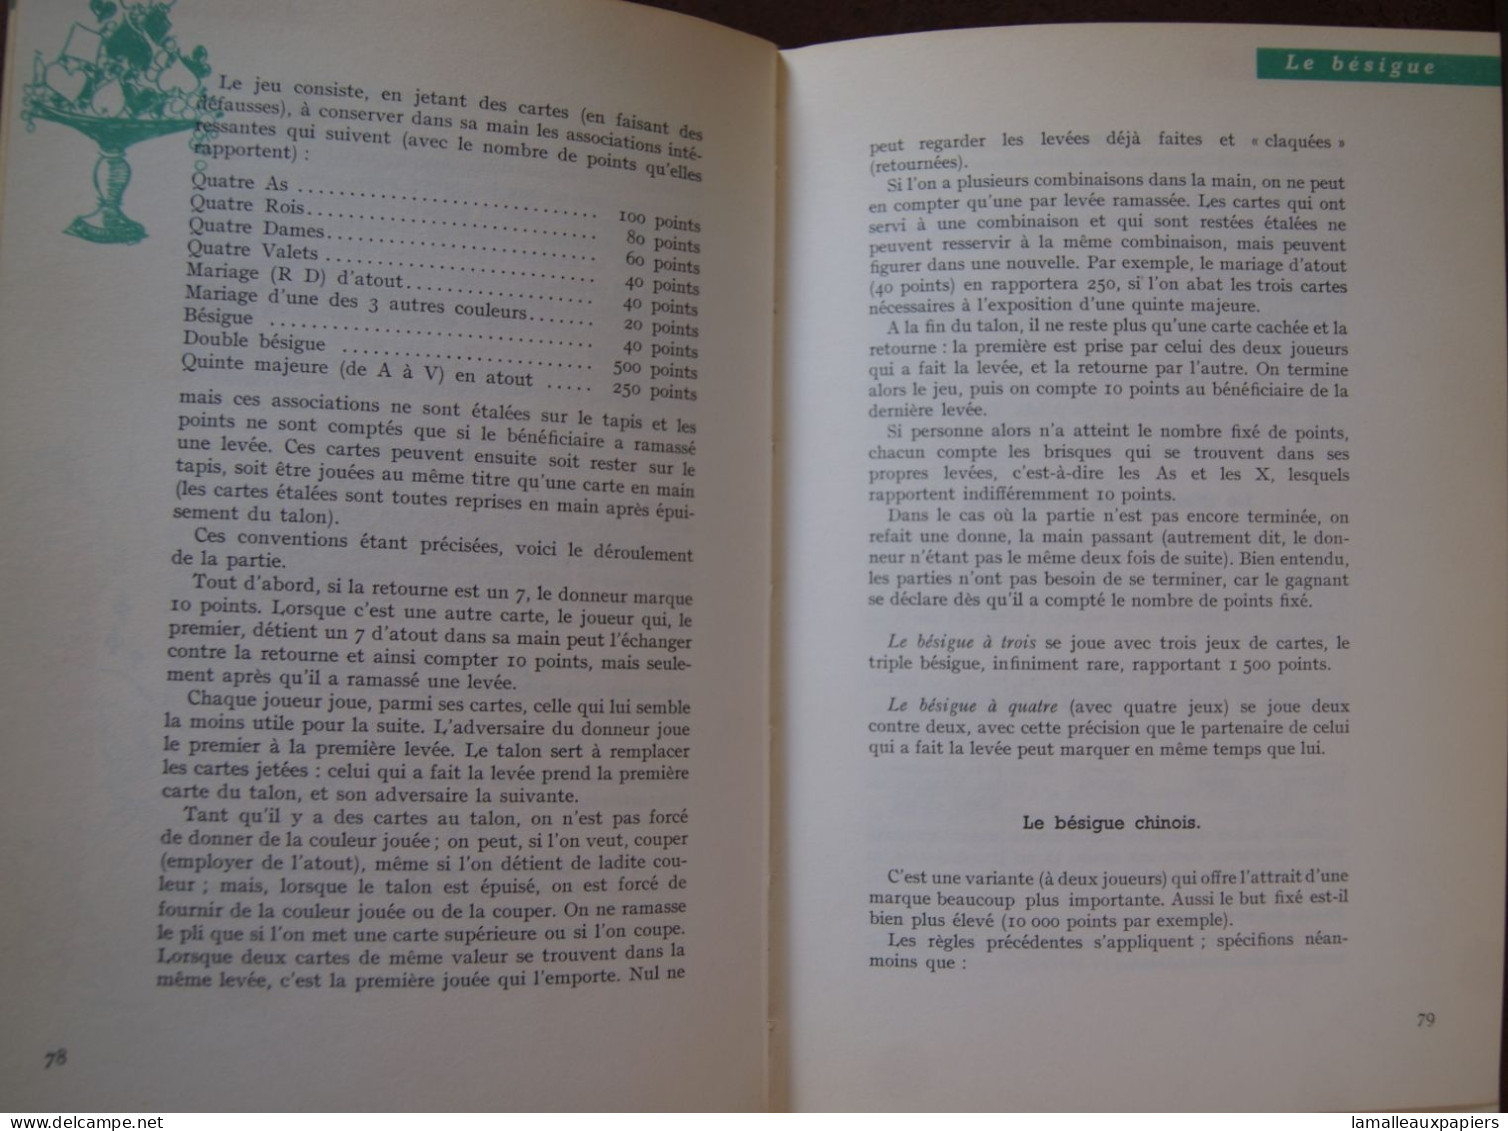 Le Code Des Jeux (Claude AVELINE) (1961) - Gezelschapsspelletjes